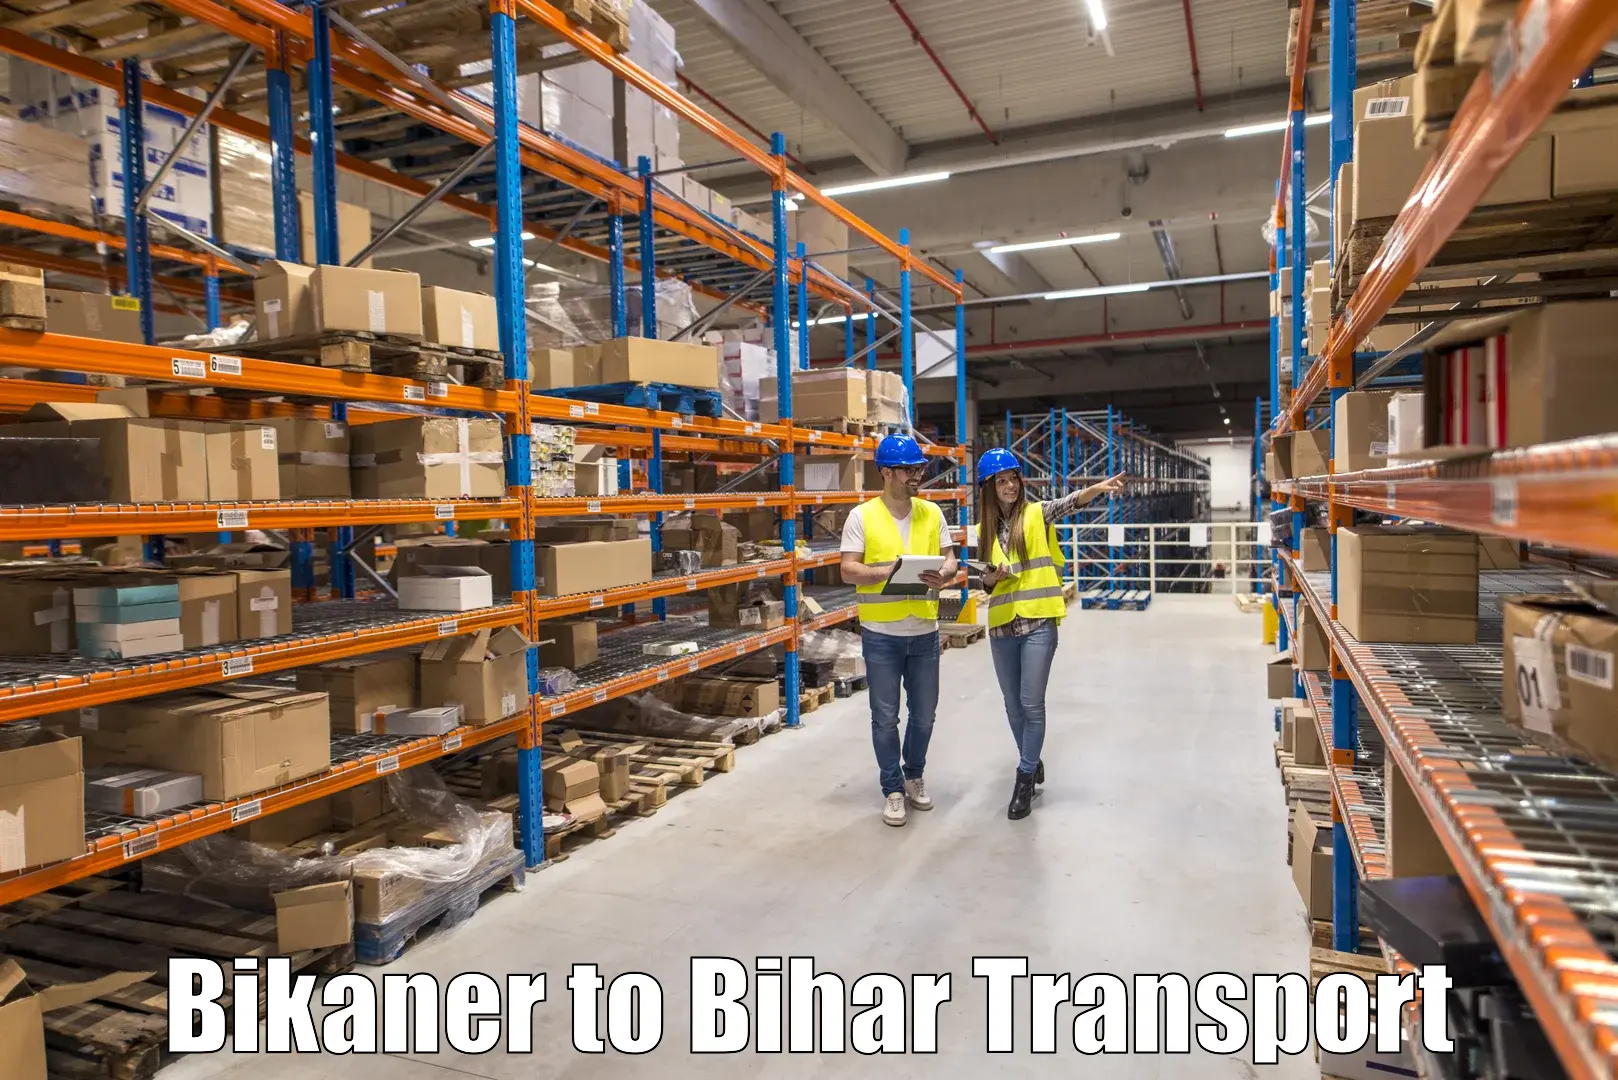 Bike transfer Bikaner to Bahadurganj